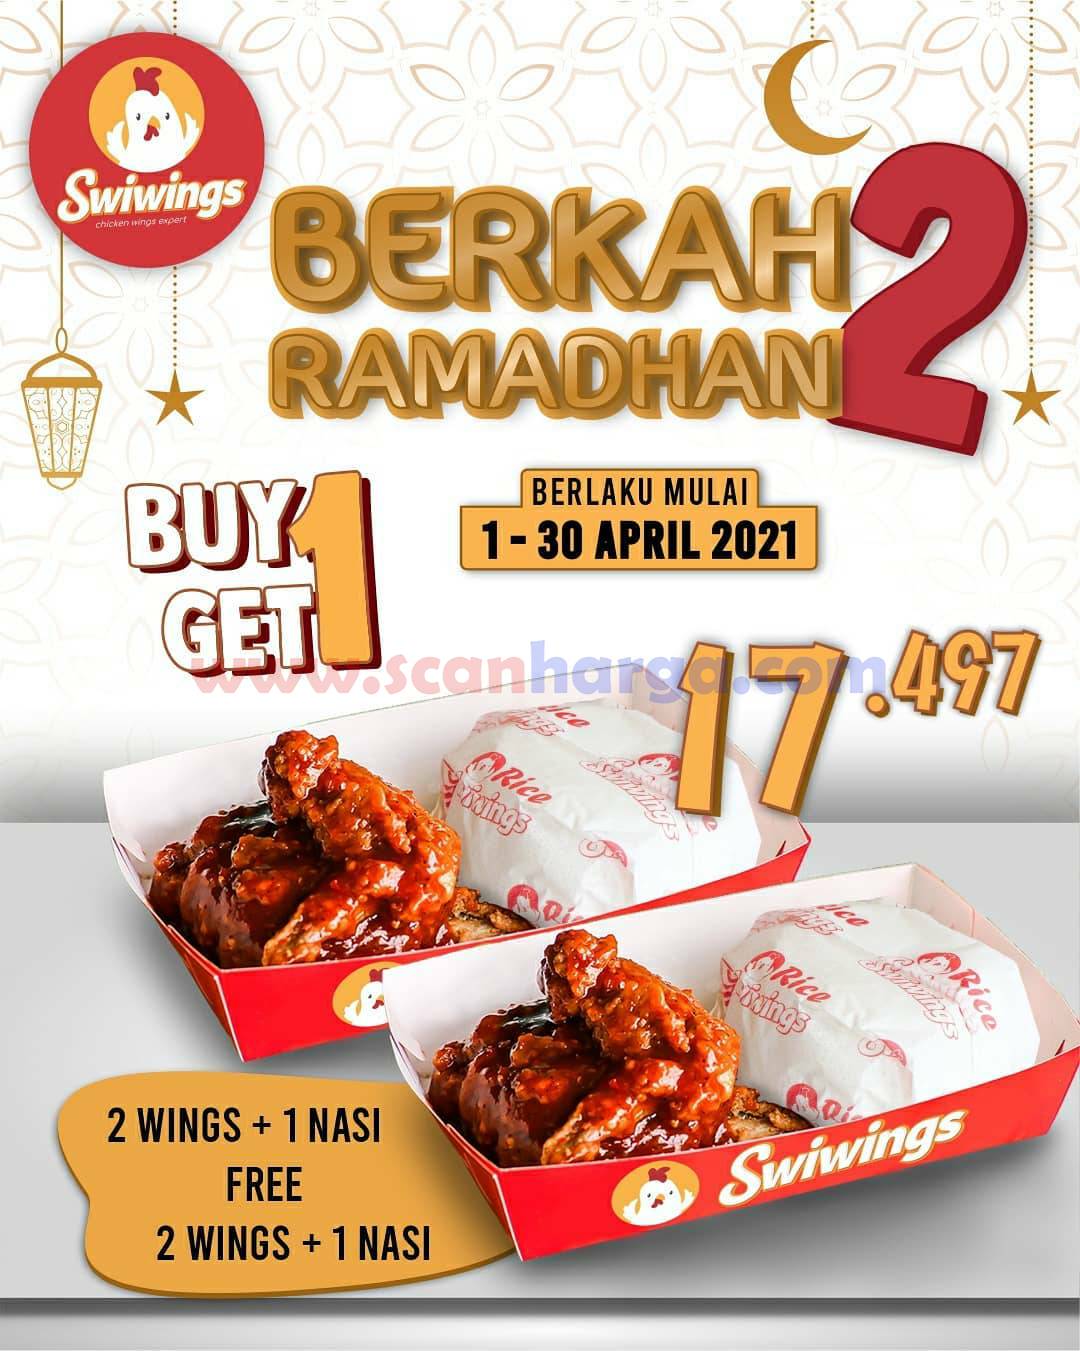 Swiwings Promo Paket Berkah Ramadhan - Beli 1 Gratis 1